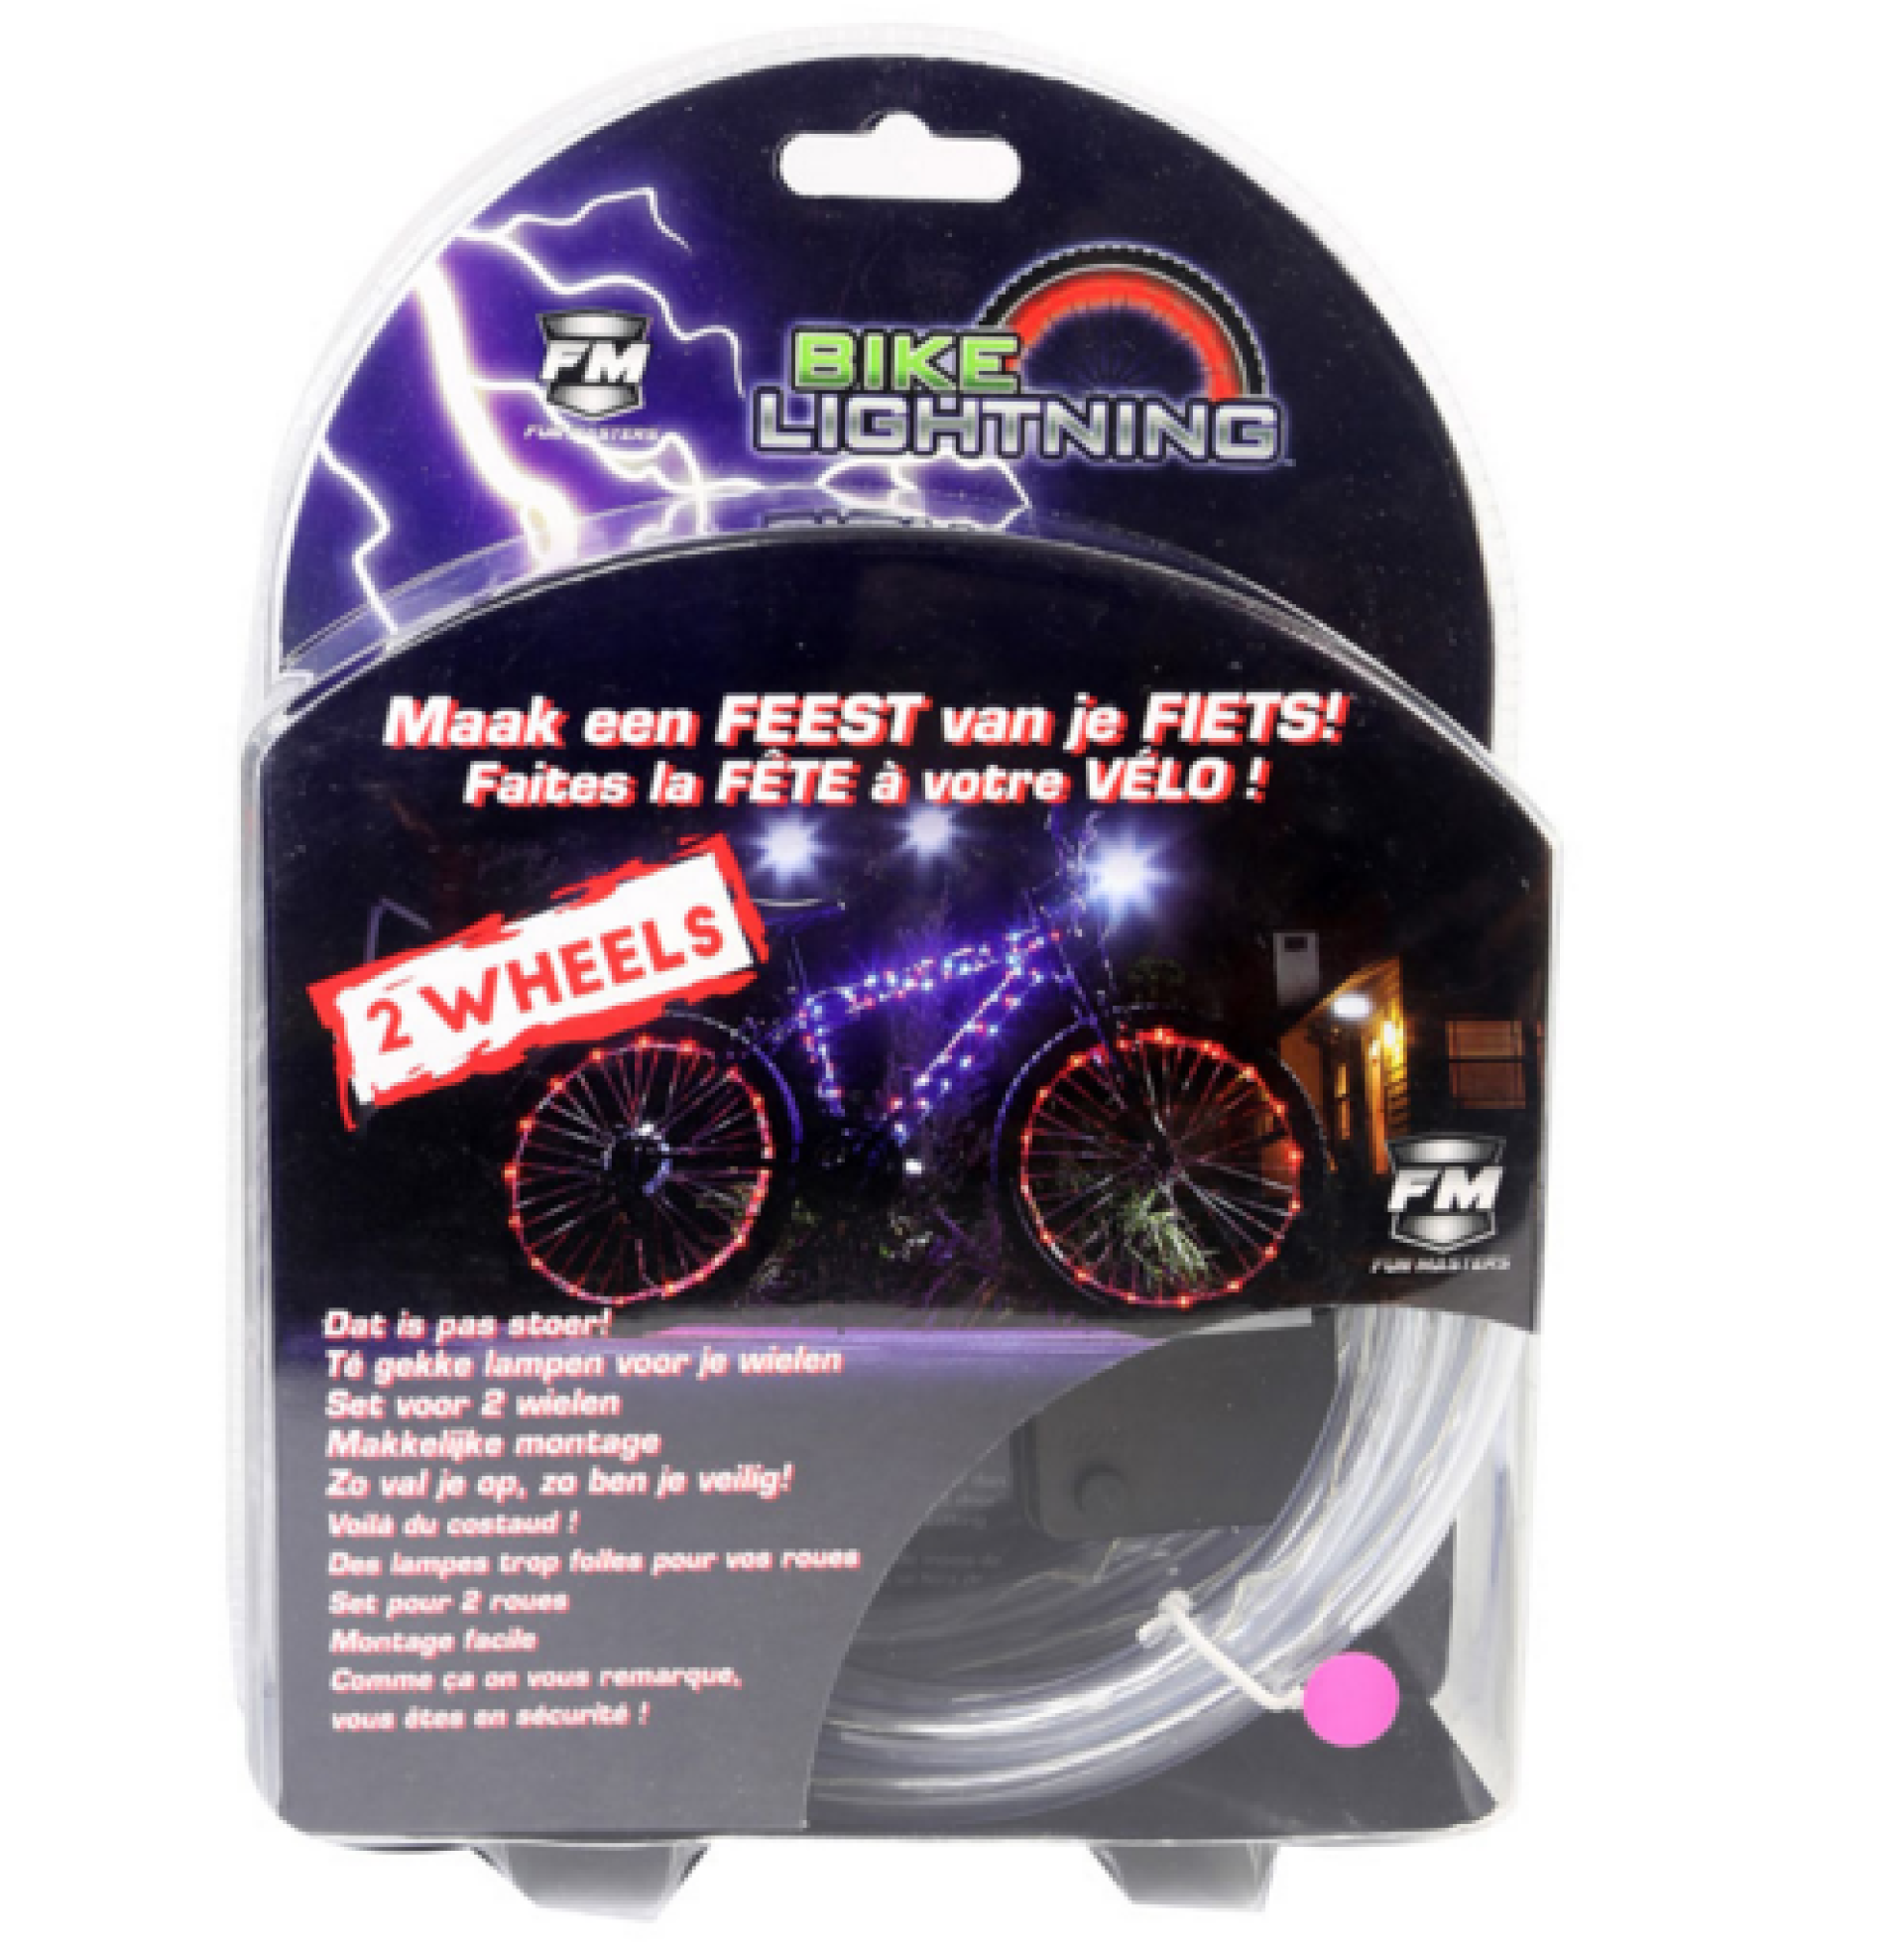 Led fietsverlichting bike lightning iNJkBrN